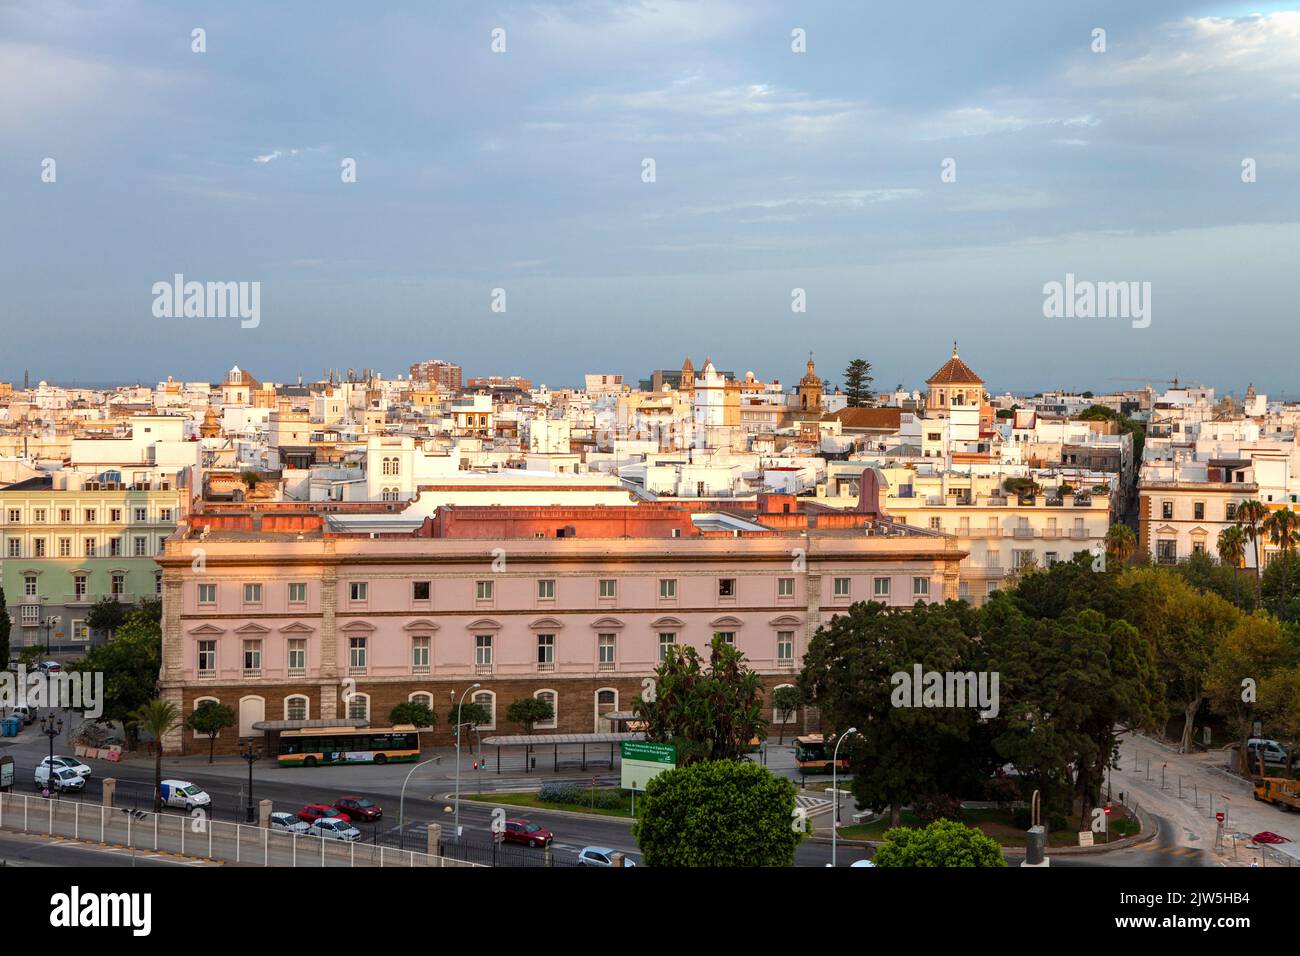 Cádiz a city and port in southwestern Spain Stock Photo